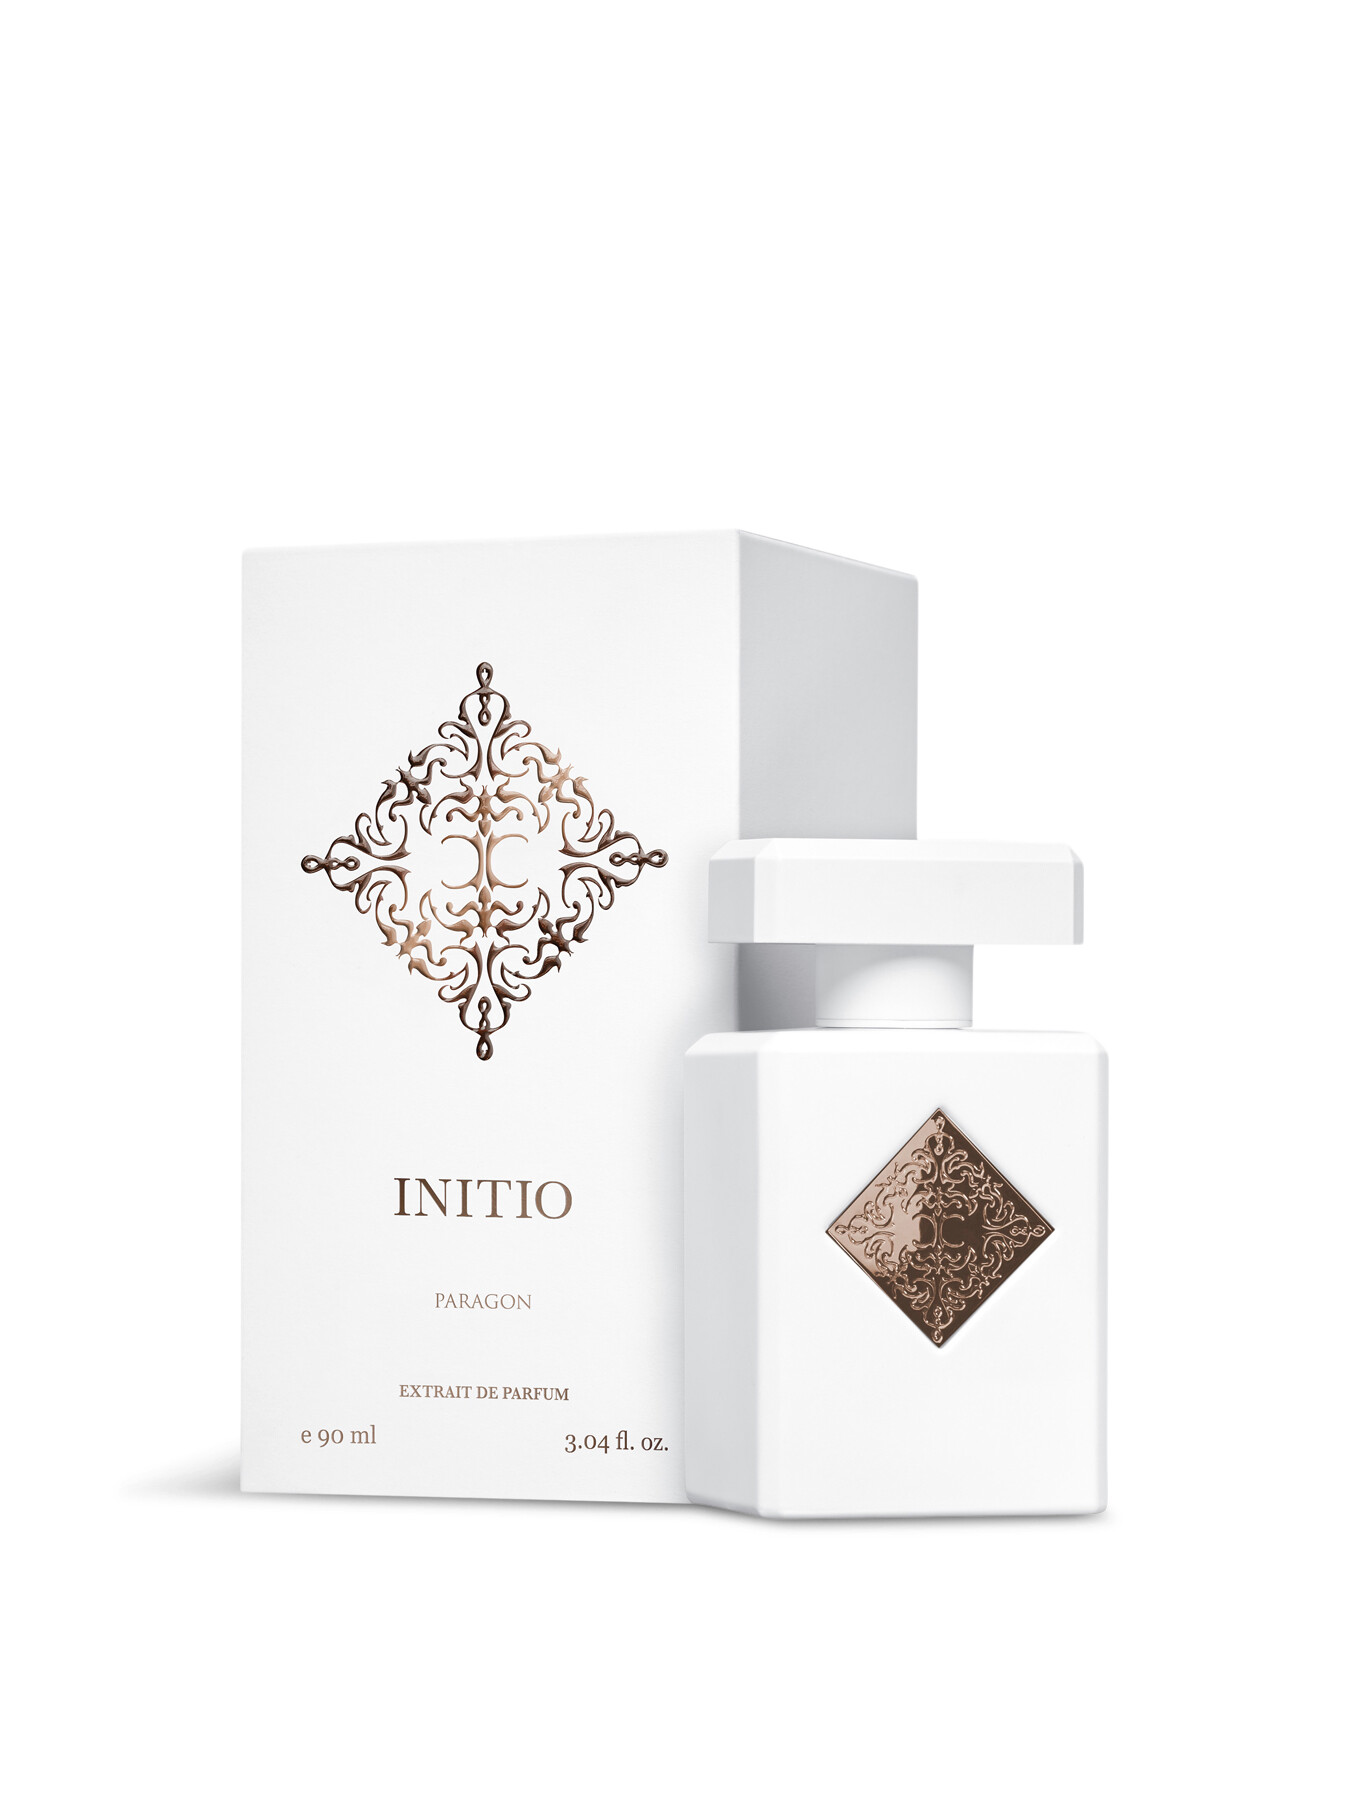 Initio Paragon Extrait De Parfum 90ml